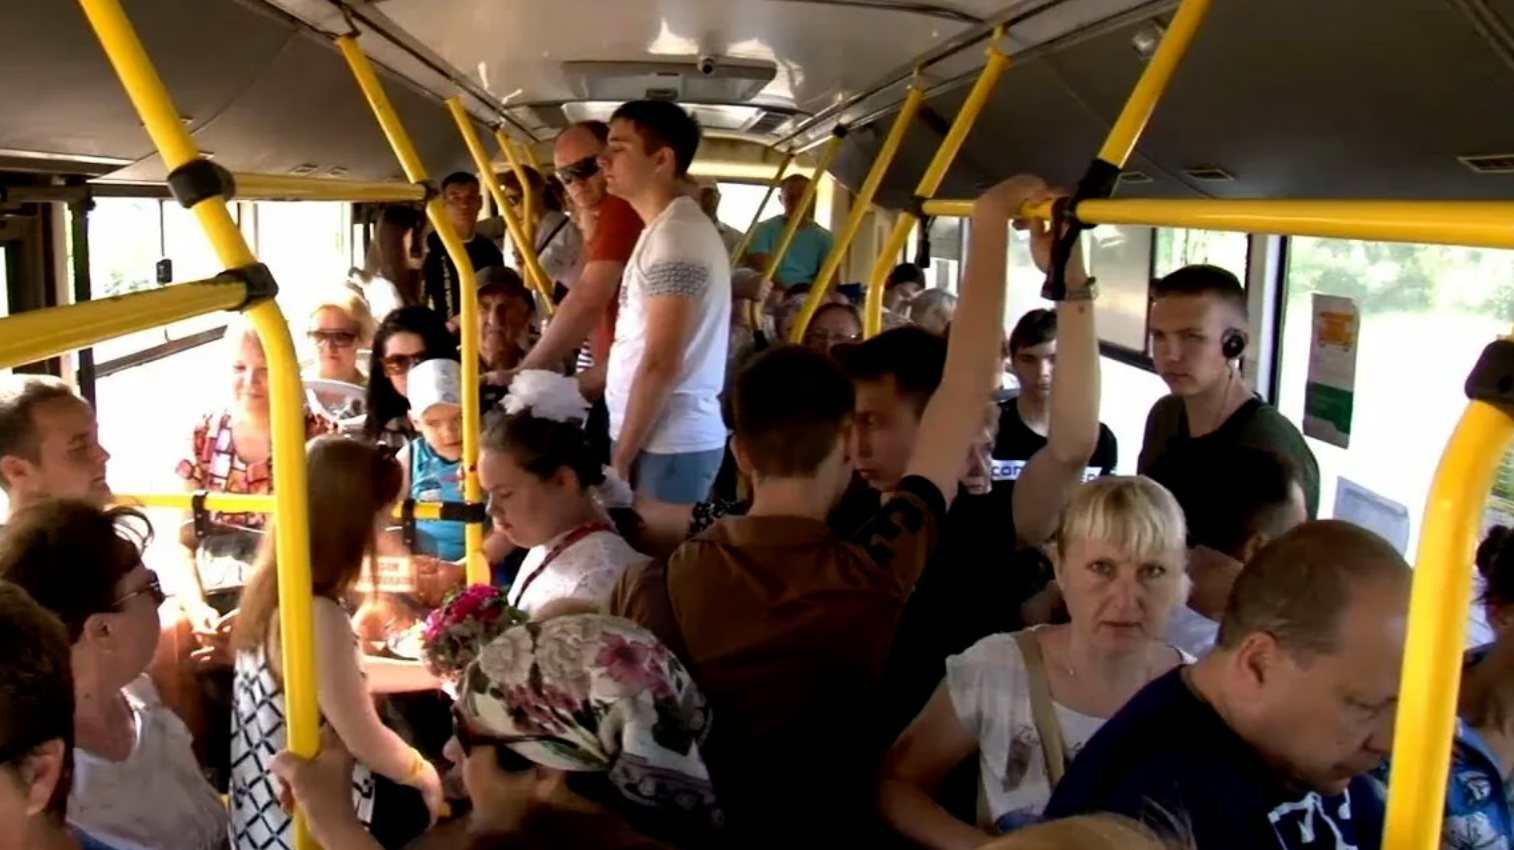 Поездка в маршрутном такси. Толпа людей в автобусе. Автобус внутри с людьми. Толба люднц в автобему. Много людей в автобусе.